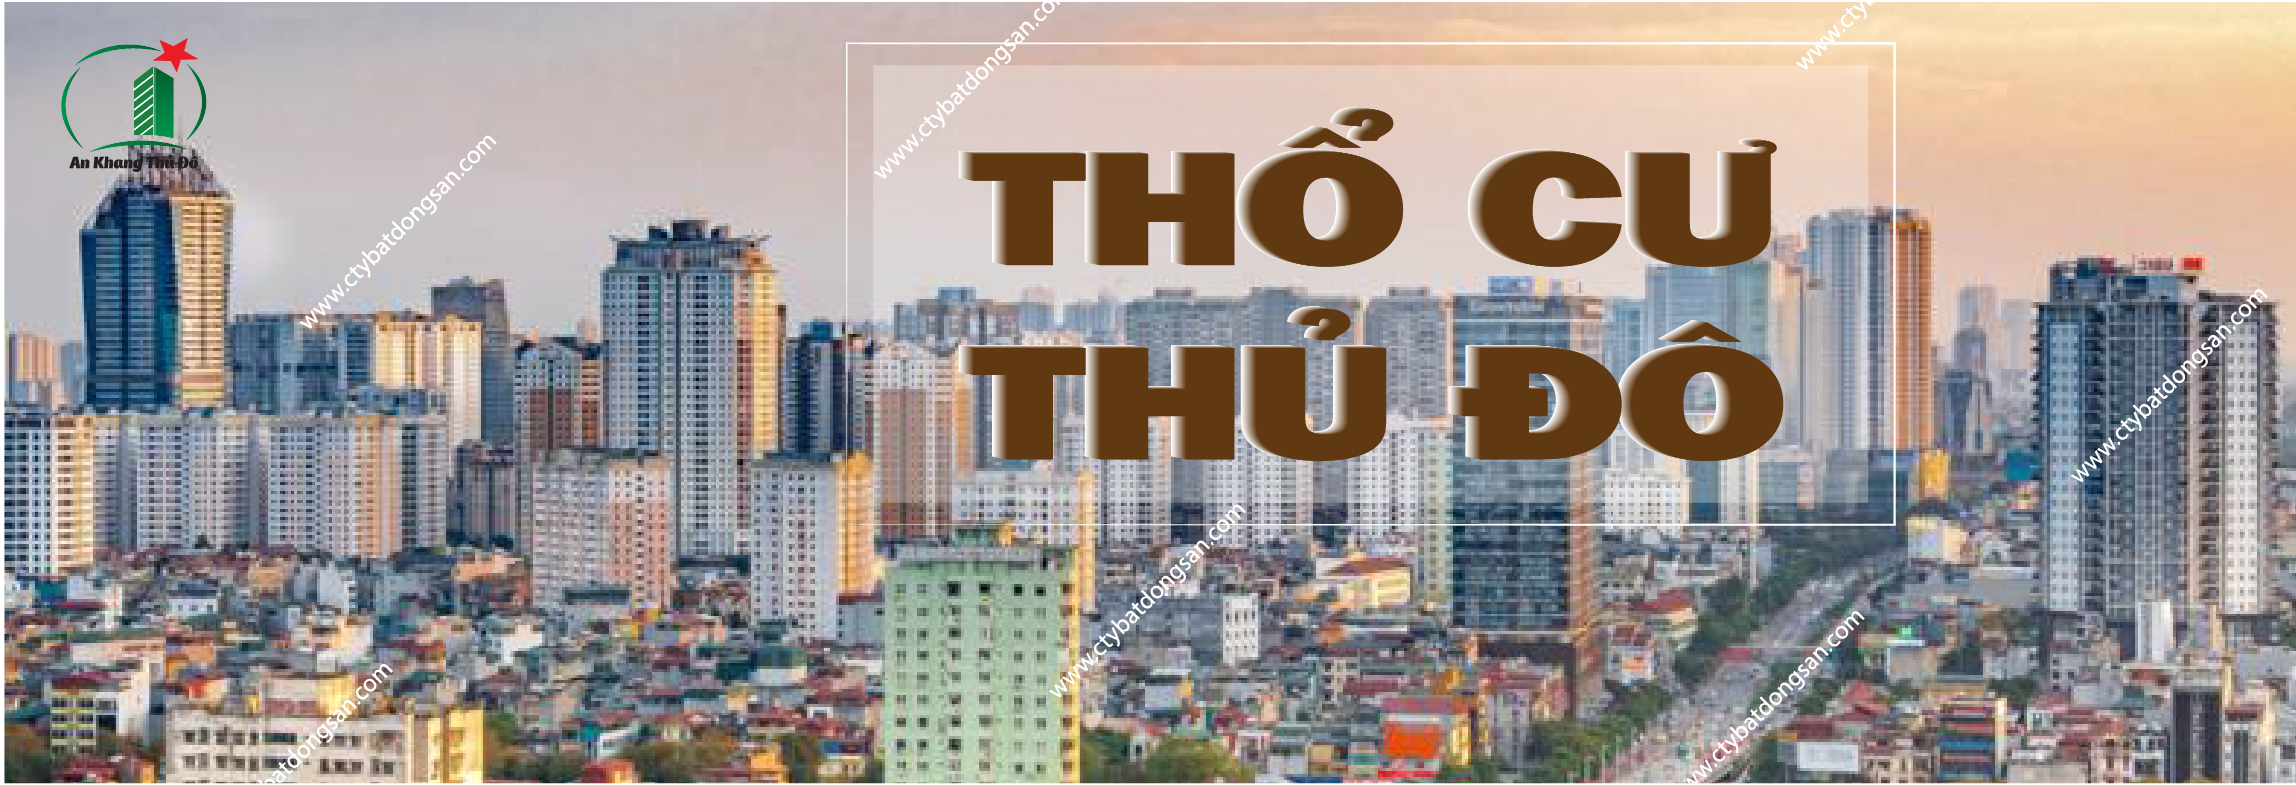 Việc mua nhà dưới 3 tỷ đồng tại Hà Nội cũng đòi hỏi sự tỉnh táo